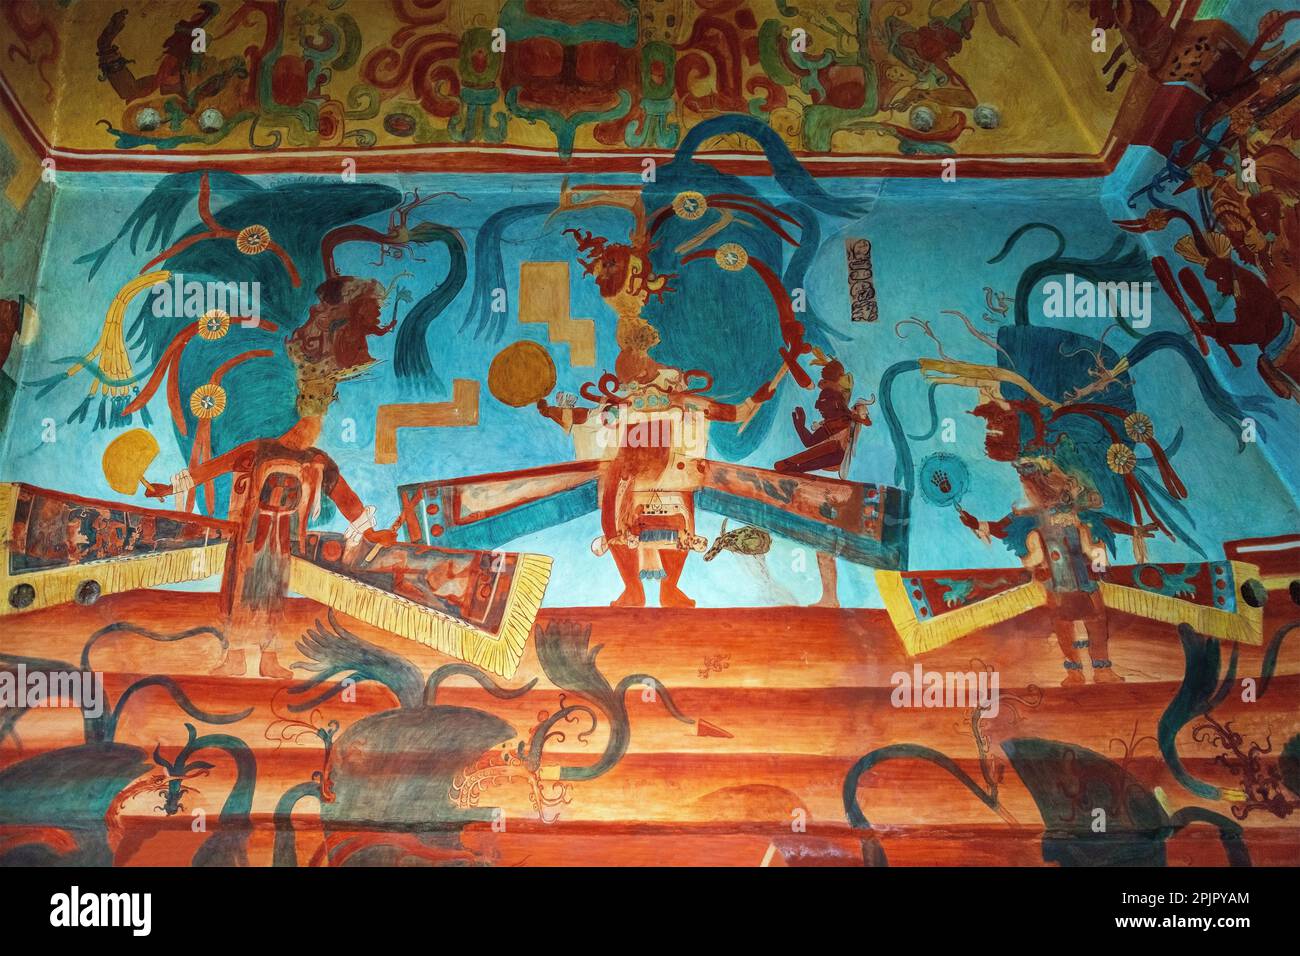 Fresque maya peinture murale dans la pièce 3 du temple des peintures murales dans la ville maya de Bonampak, Chiapas, Mexique. Banque D'Images